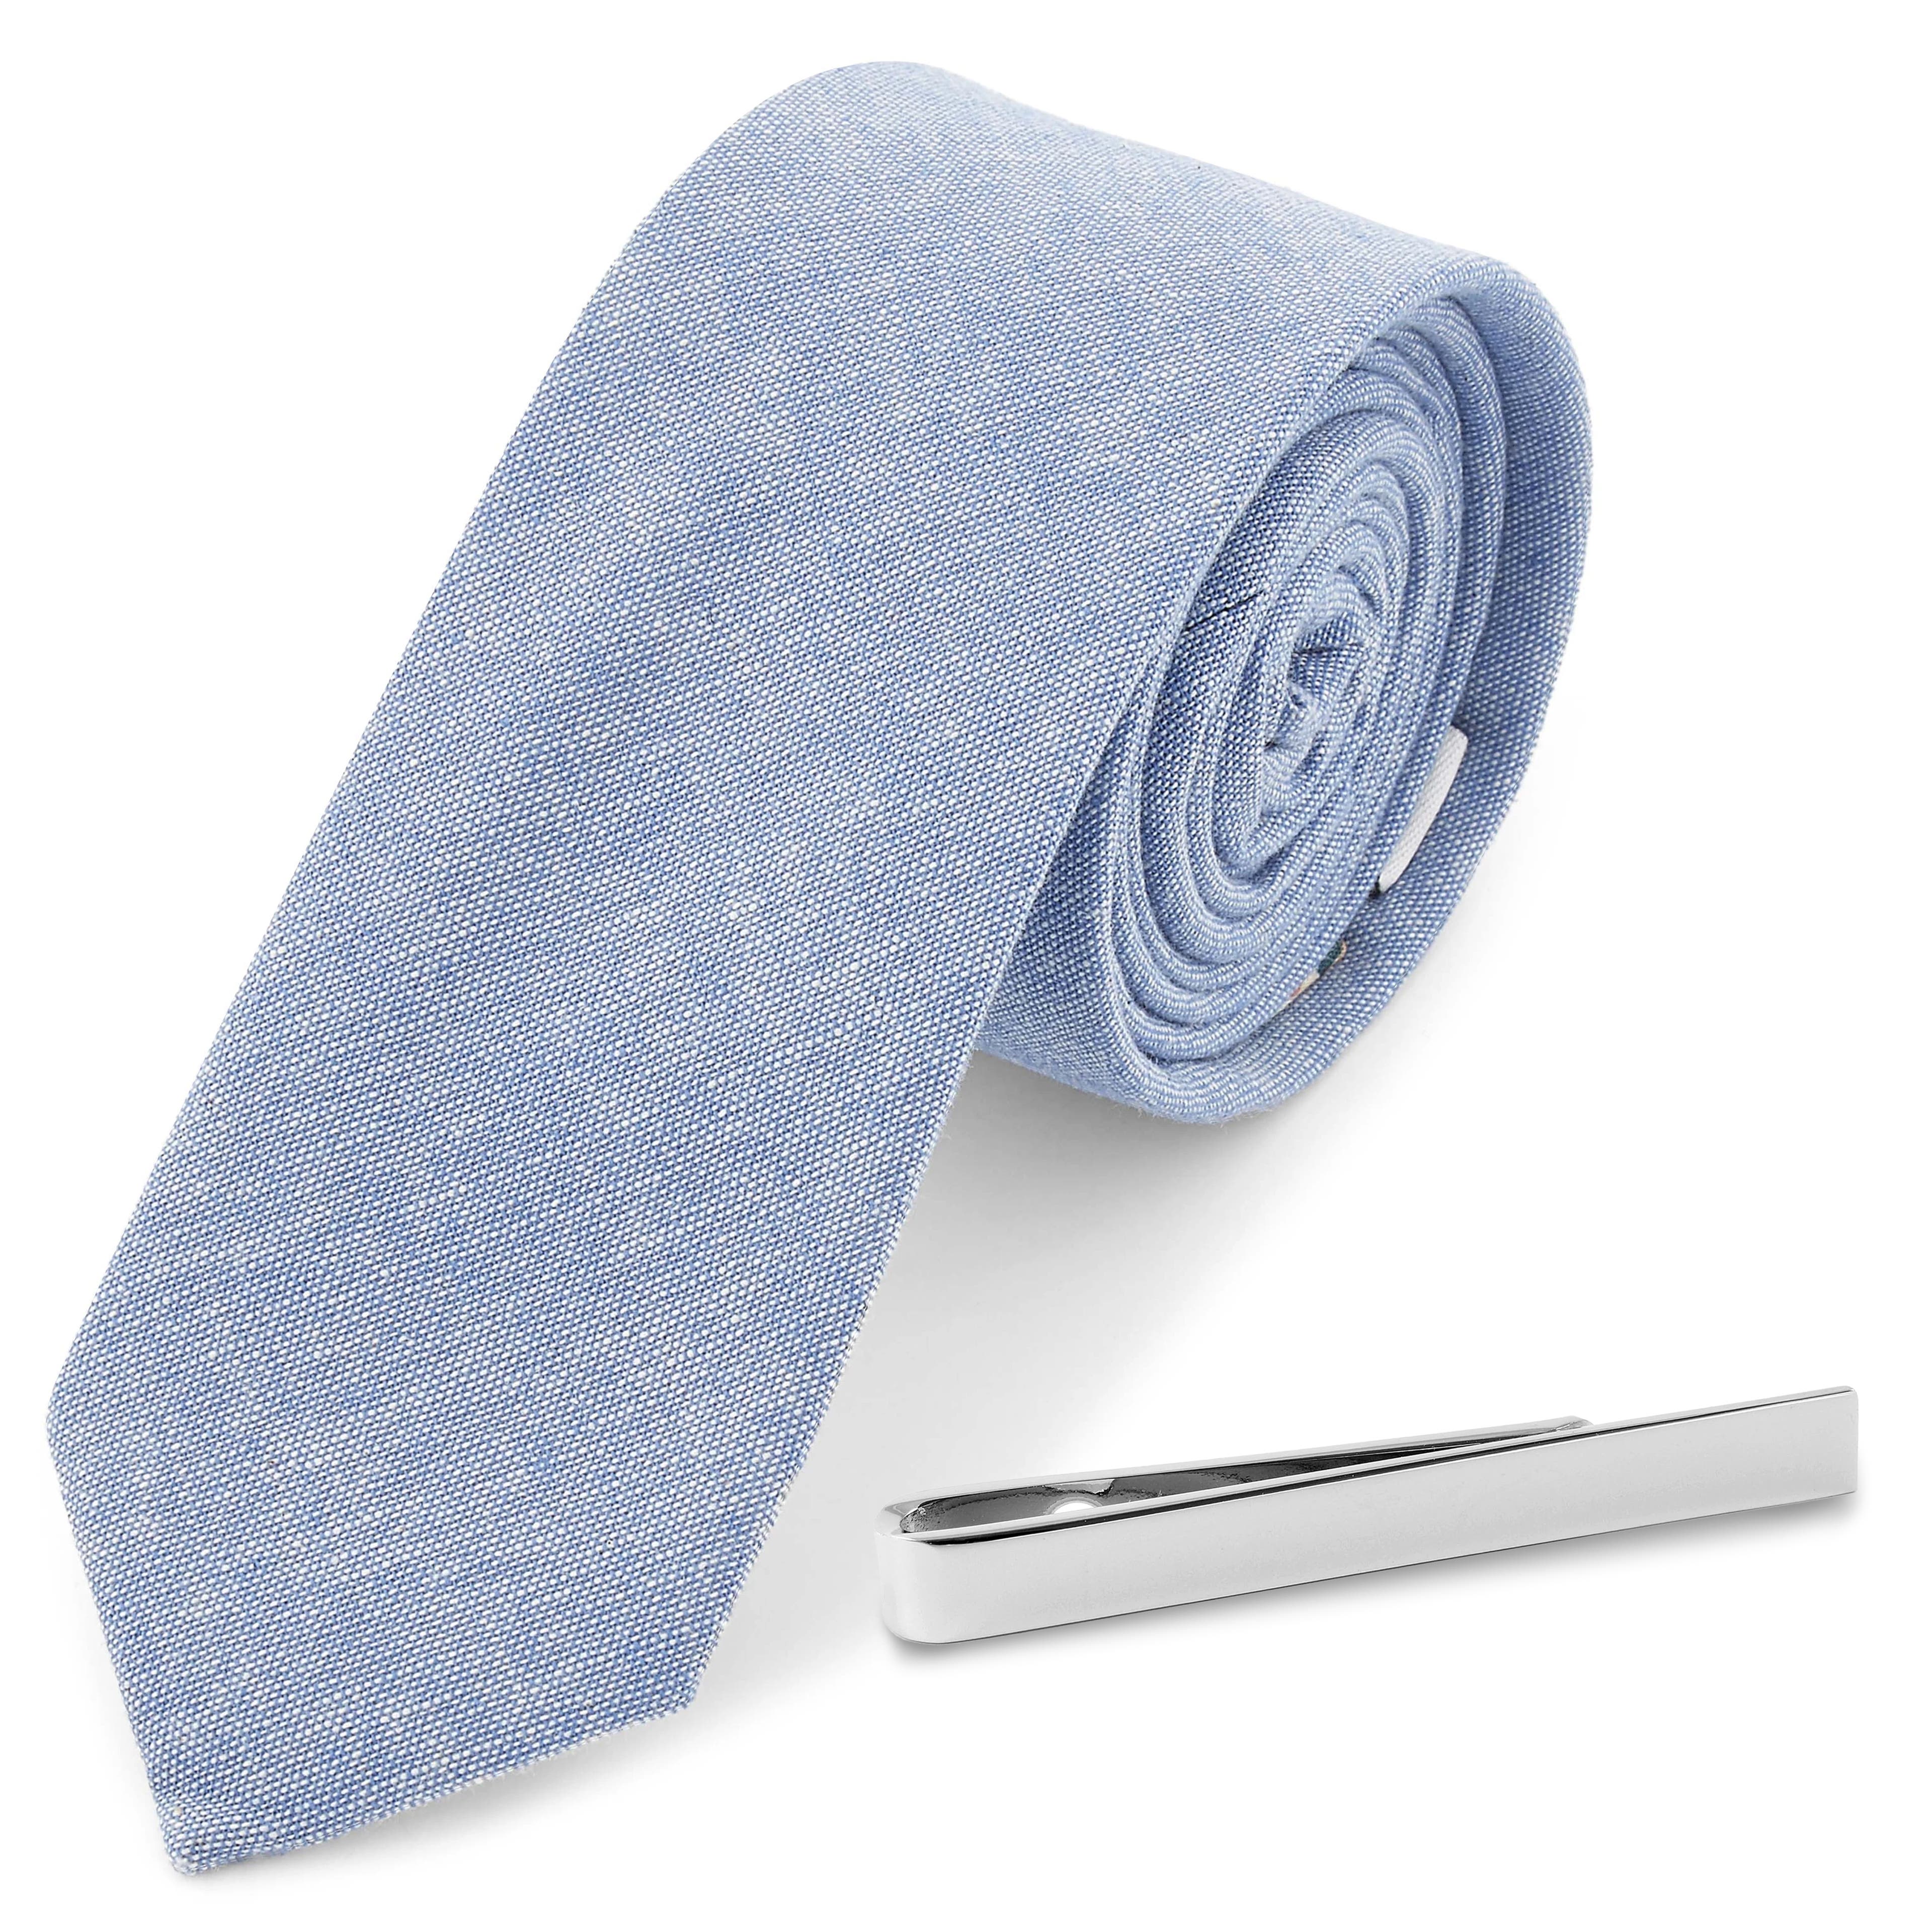 Zestaw krawat jasnoniebieski i srebrzysta spinka do krawata